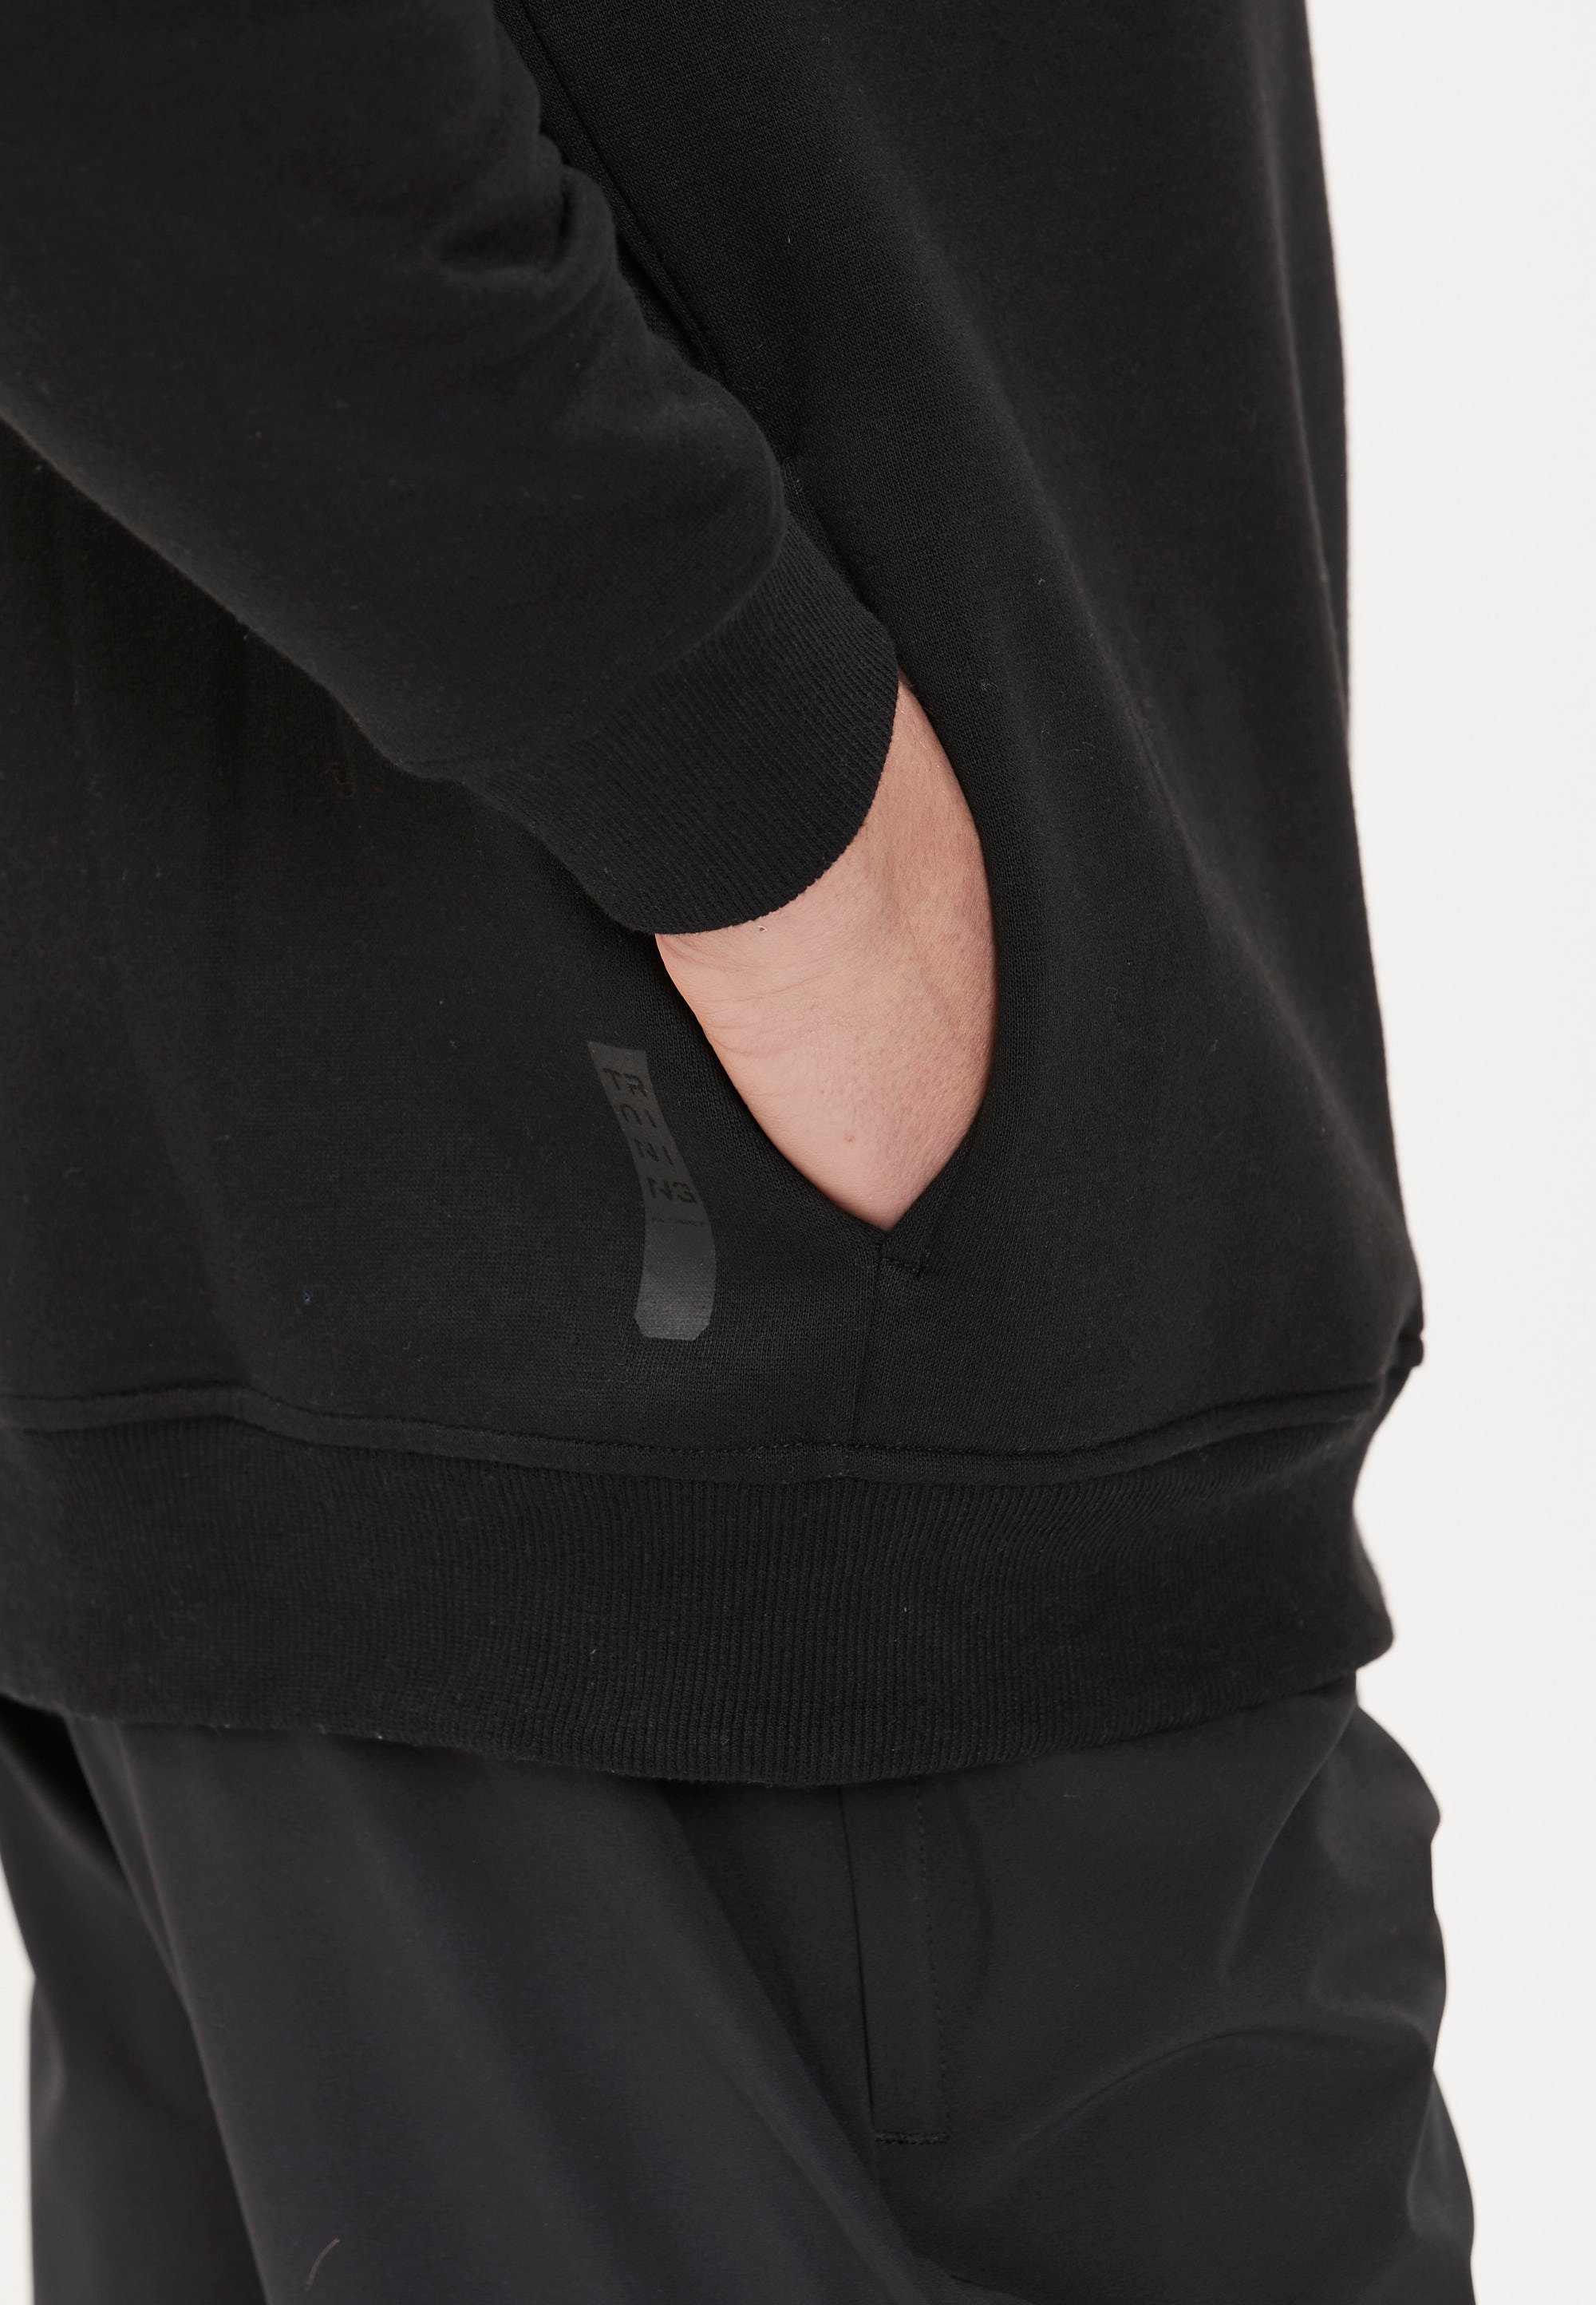 ENDURANCE Kapuzensweatshirt LIONK schnell Qualität in trockender schwarz